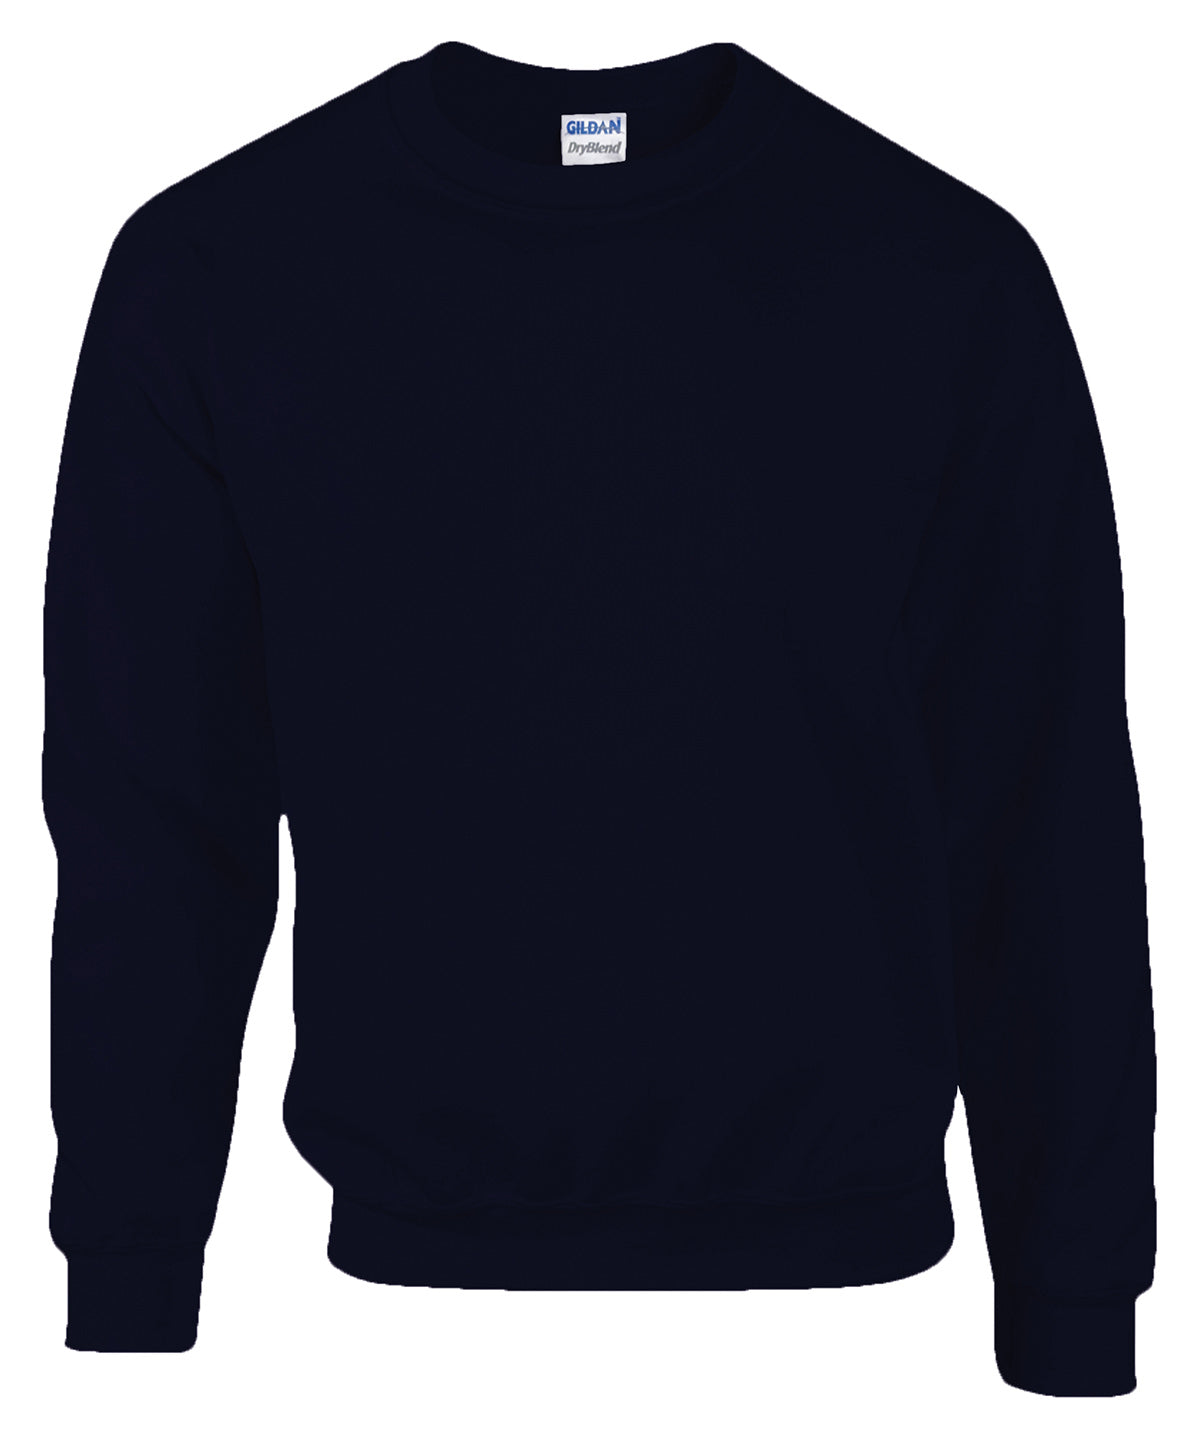 Háskólapeysur - DryBlend® Adult Crew Neck Sweatshirt